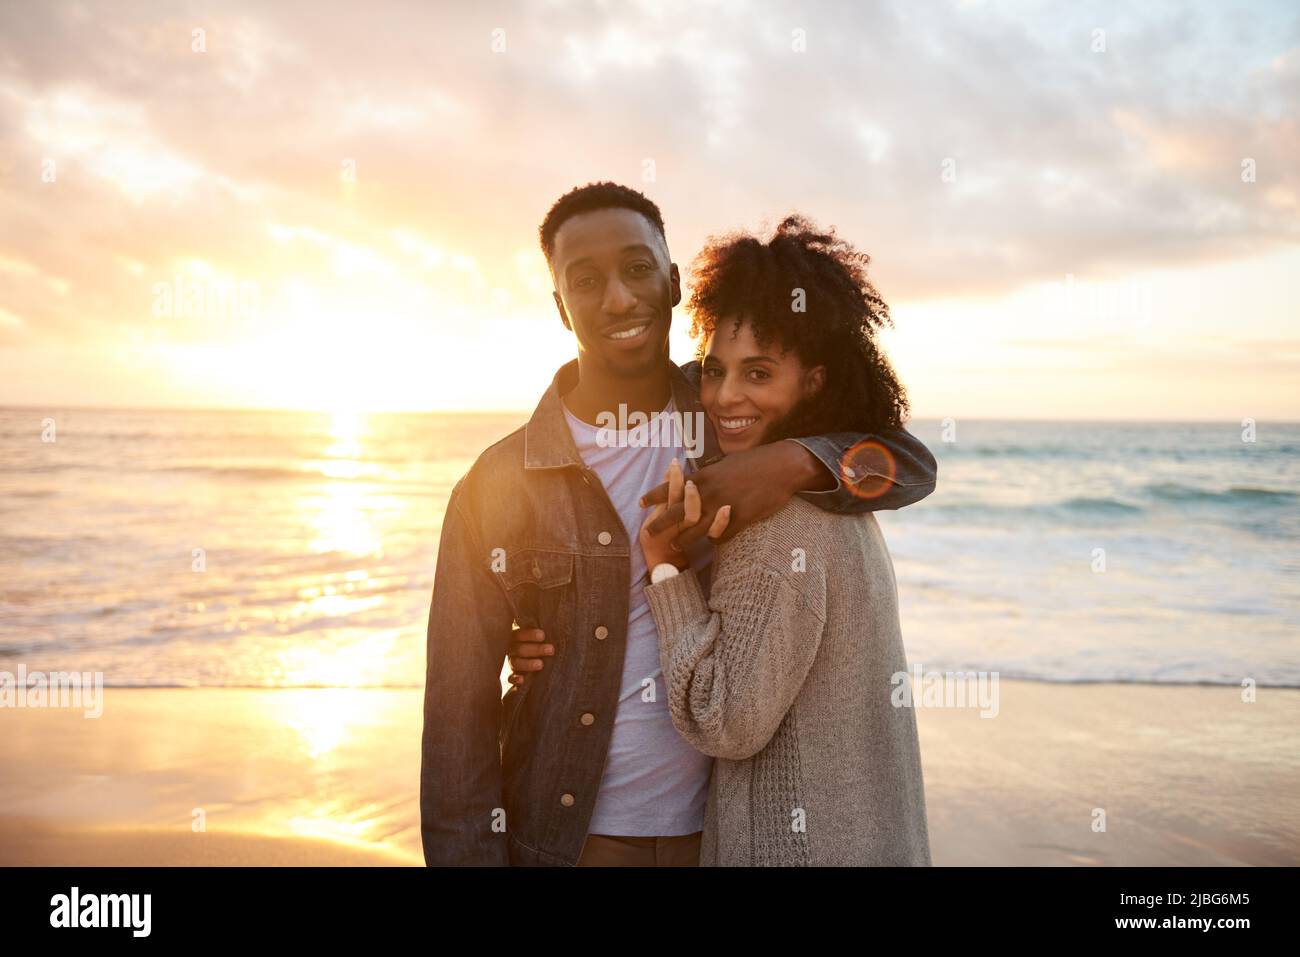 Amante joven pareja multiétnica sonriendo en la playa al atardecer Foto de stock